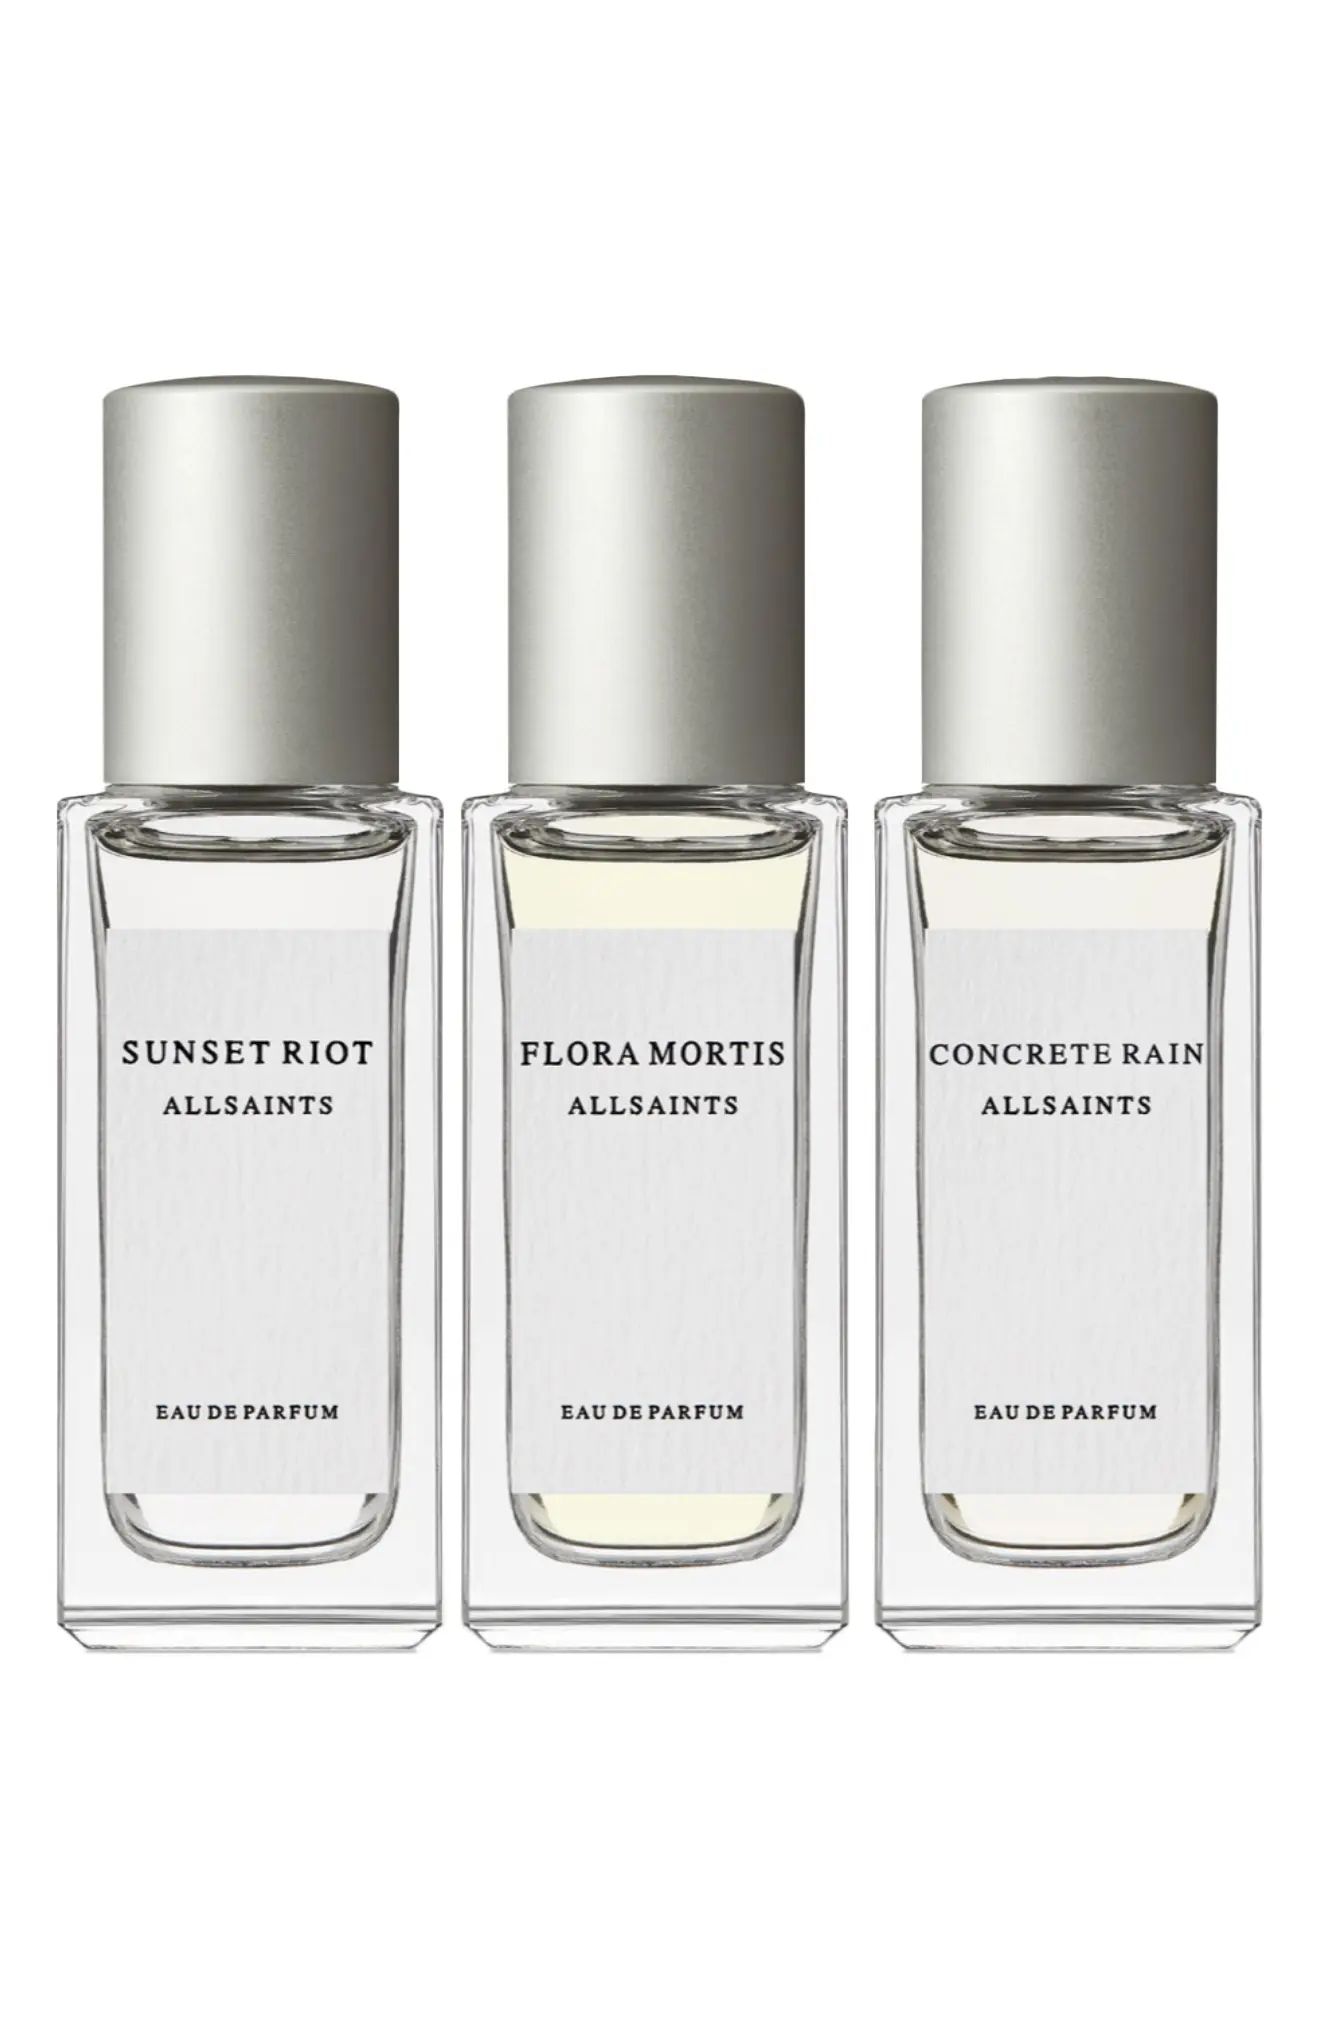 AllSaints Travel Size Eau de Parfum Discovery Set at Nordstrom | Nordstrom